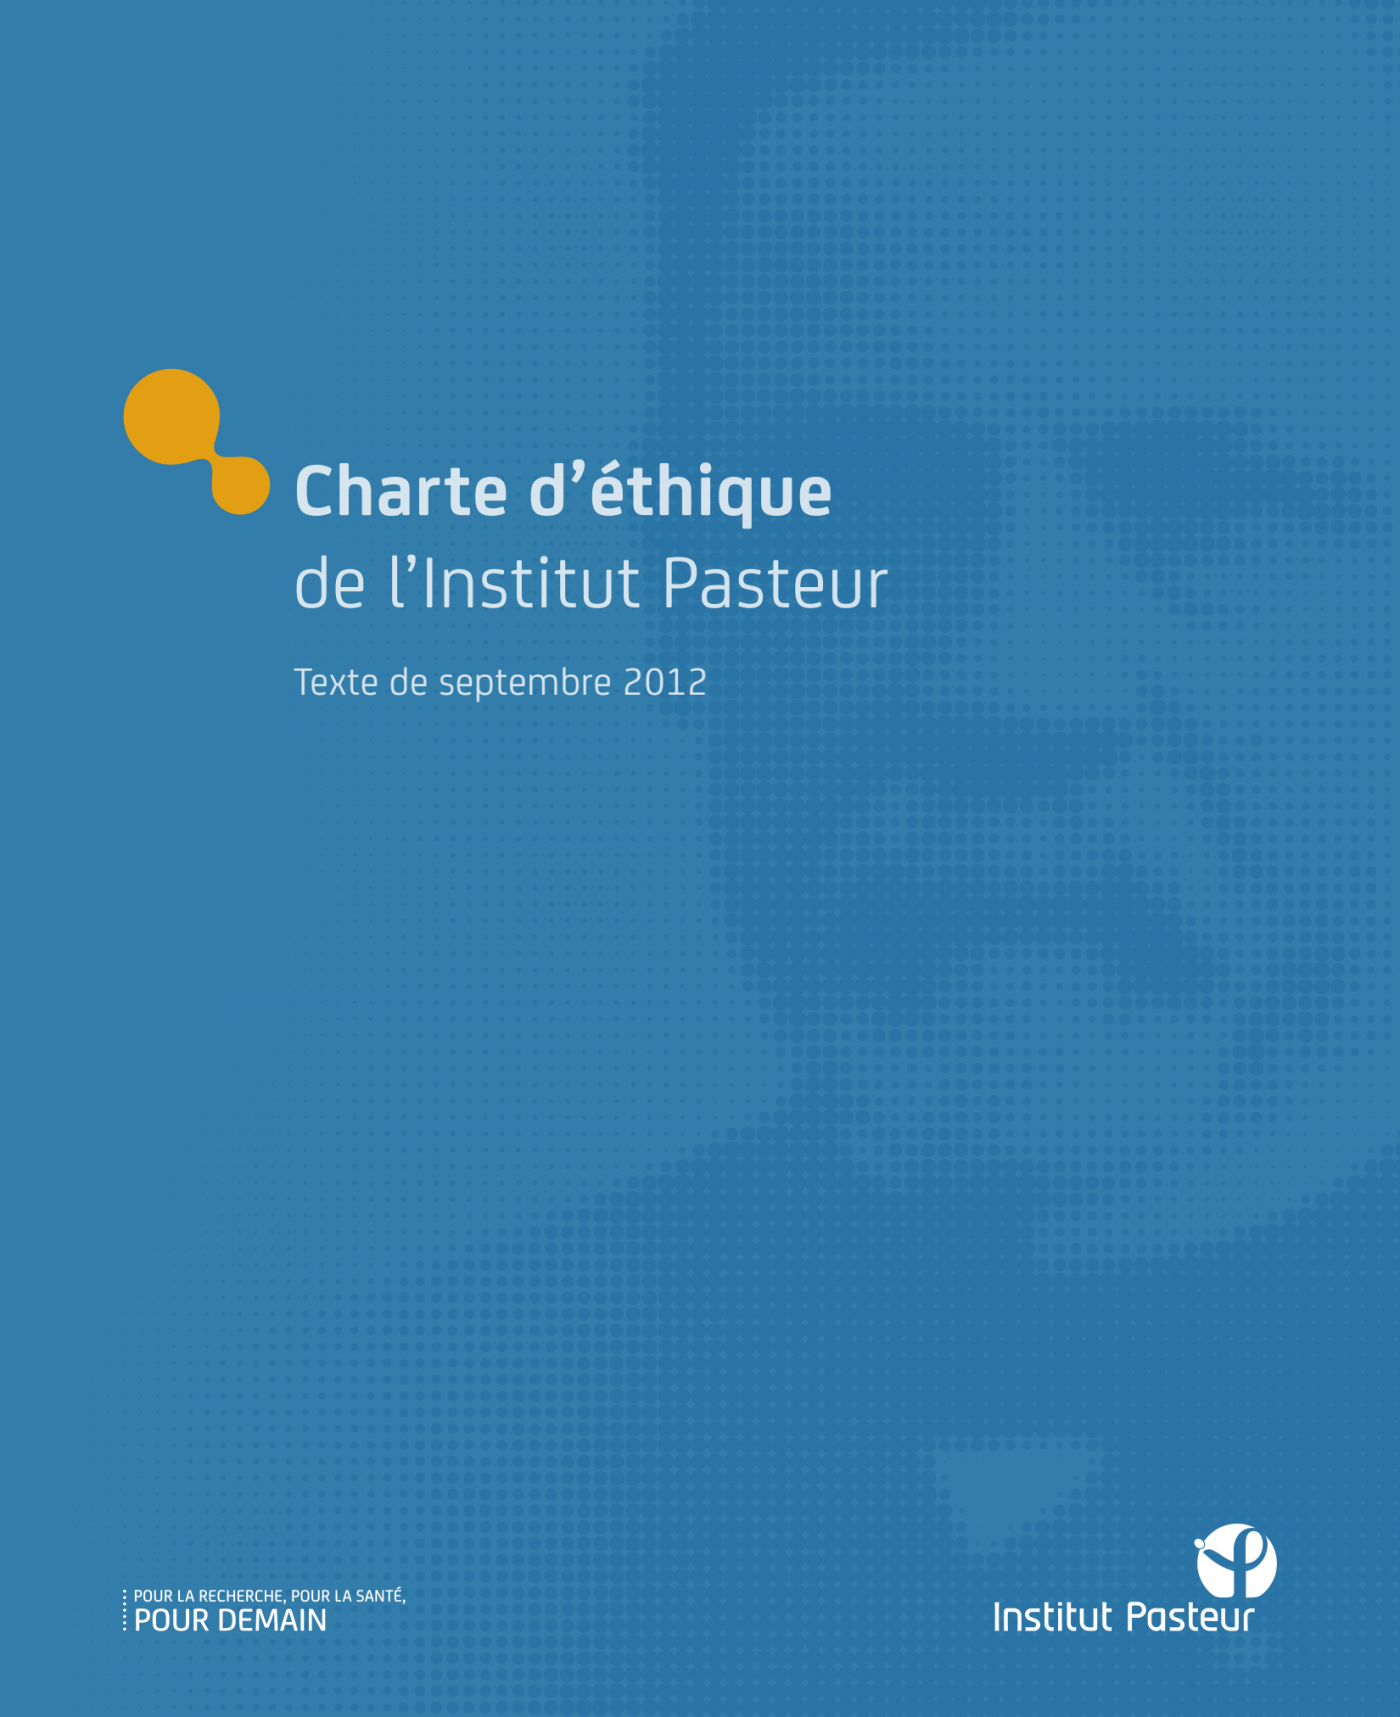 Charte d'éthique - Institut Pasteur